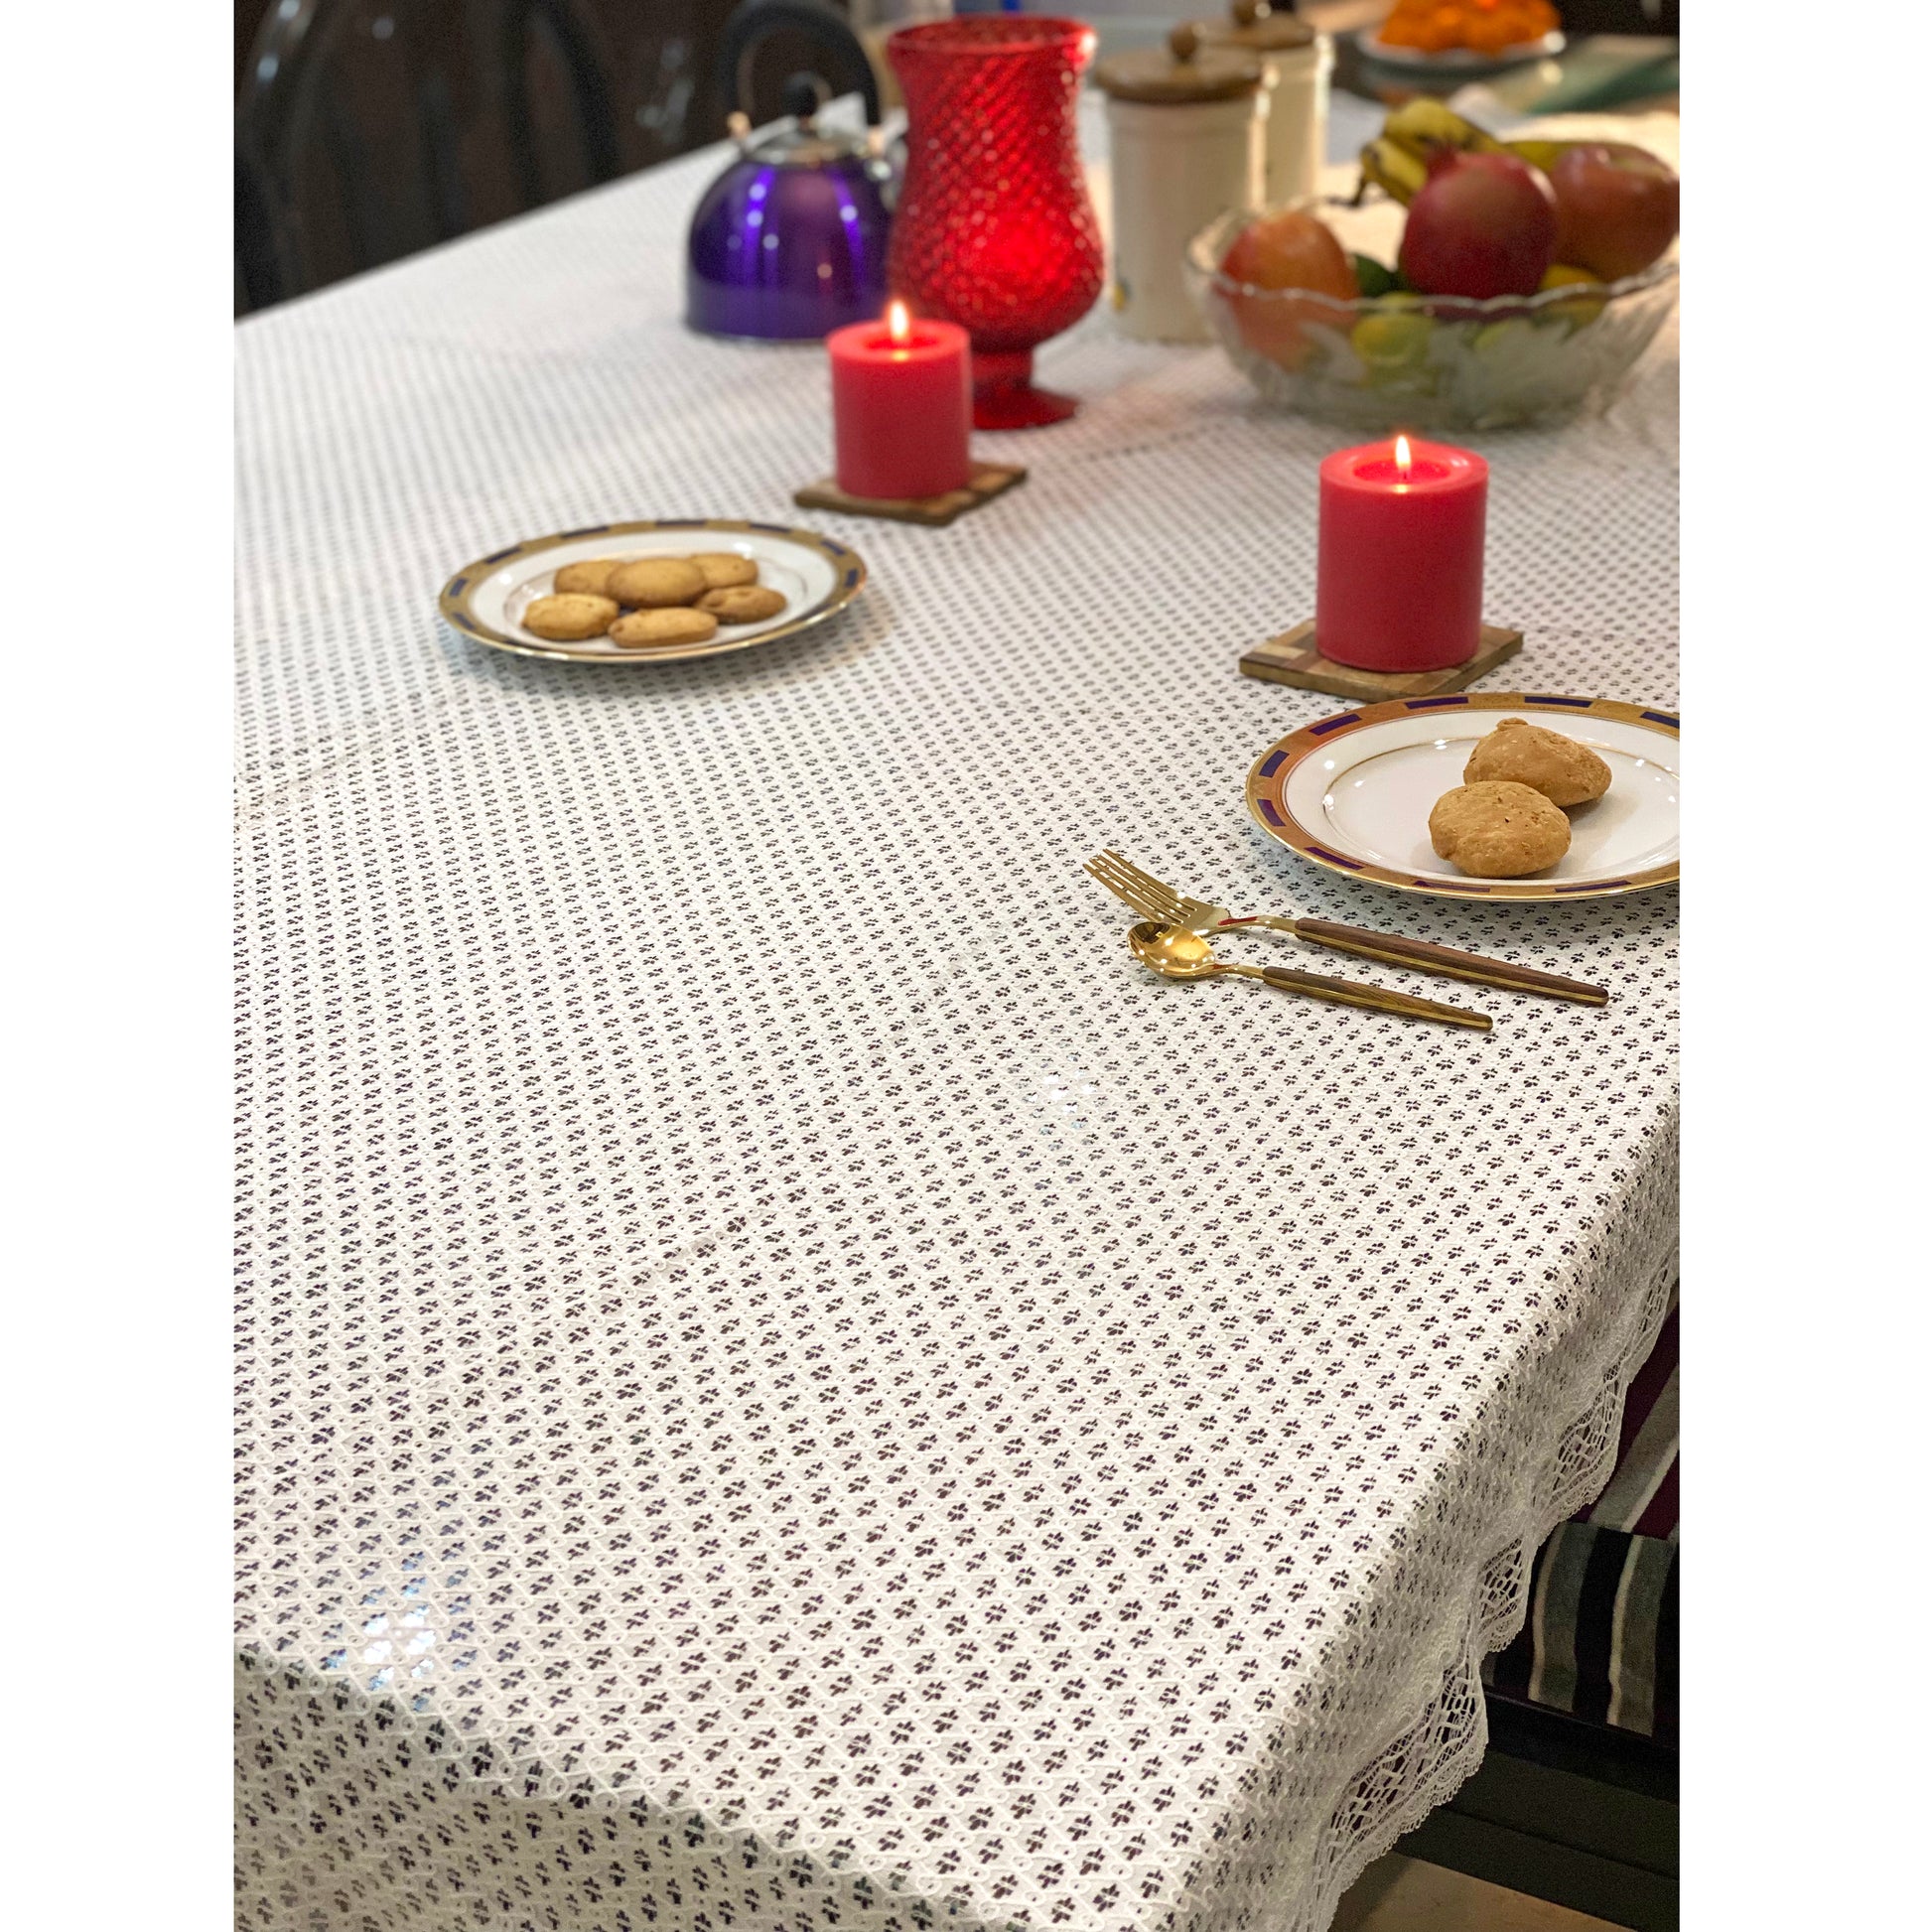 festive-net-table-cloth-for-christmas-decor